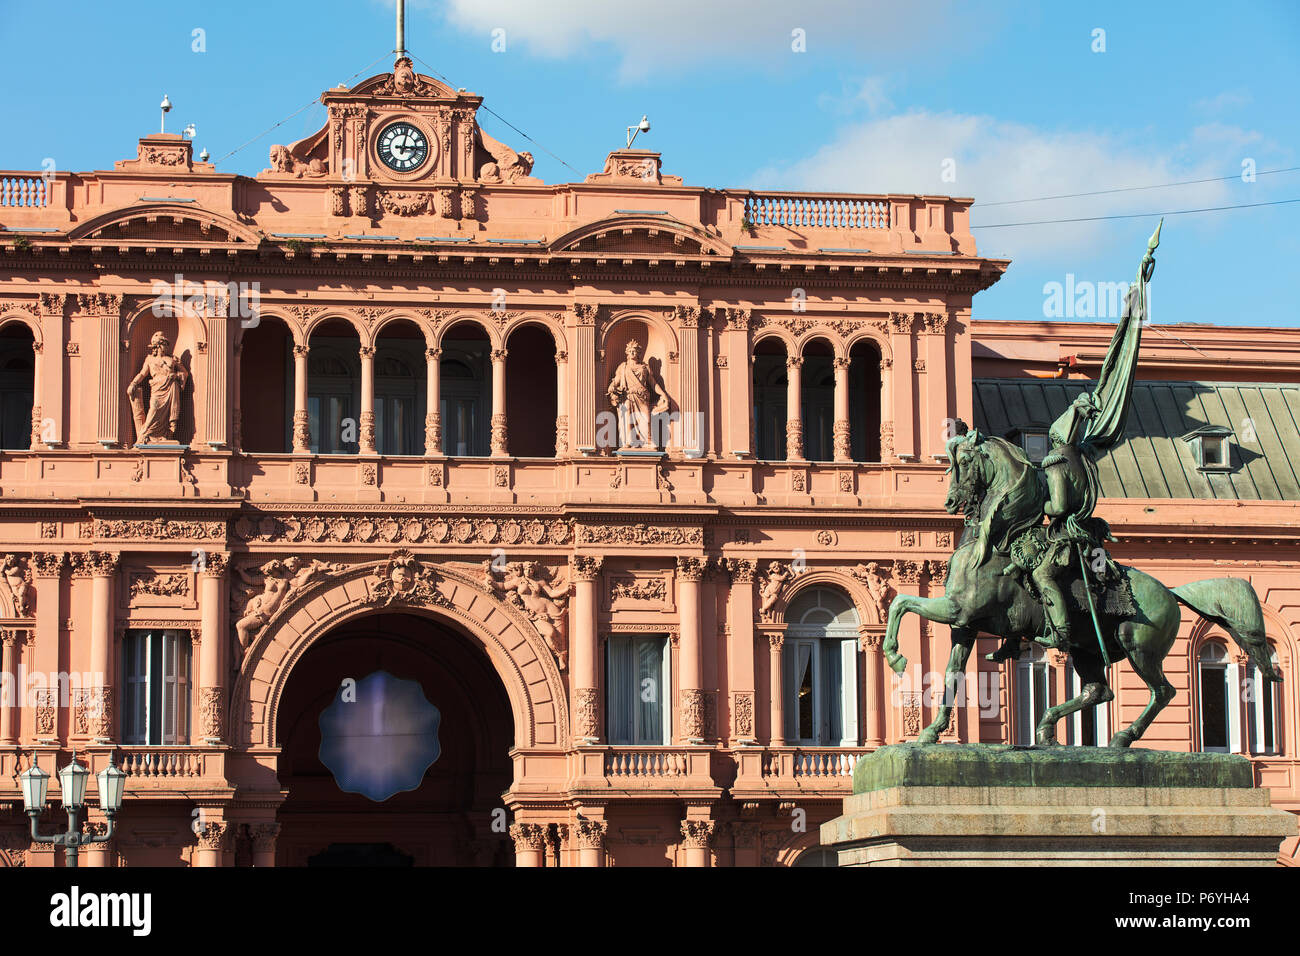 Détail de la 'Casa Rosada', executive mansion et bureau du président de l'Argentine. Monserrat, Buenos Aires, Argentine. Banque D'Images